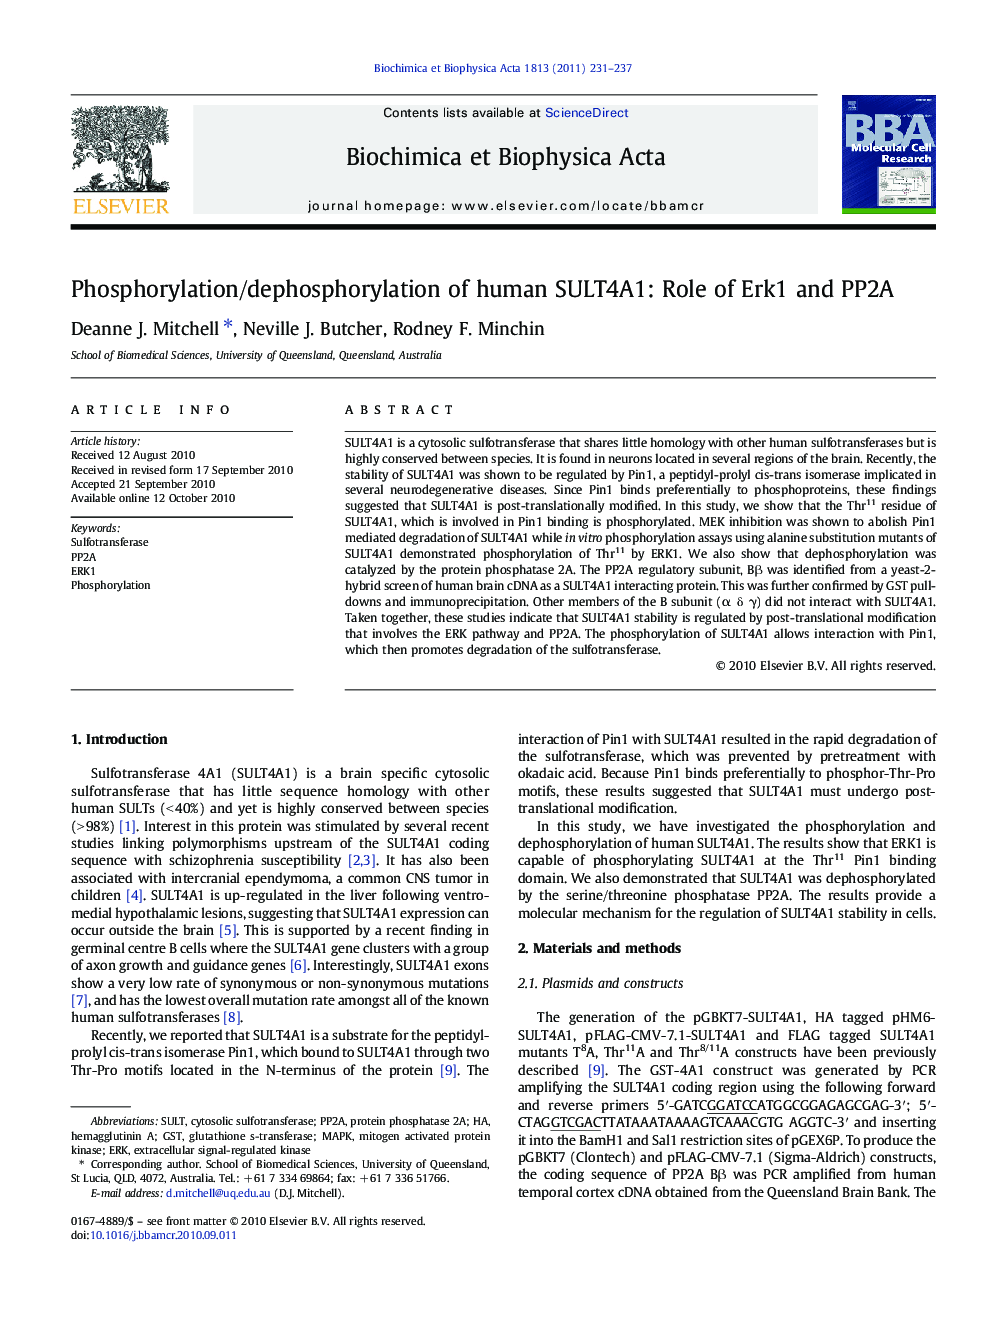 Phosphorylation/dephosphorylation of human SULT4A1: Role of Erk1 and PP2A